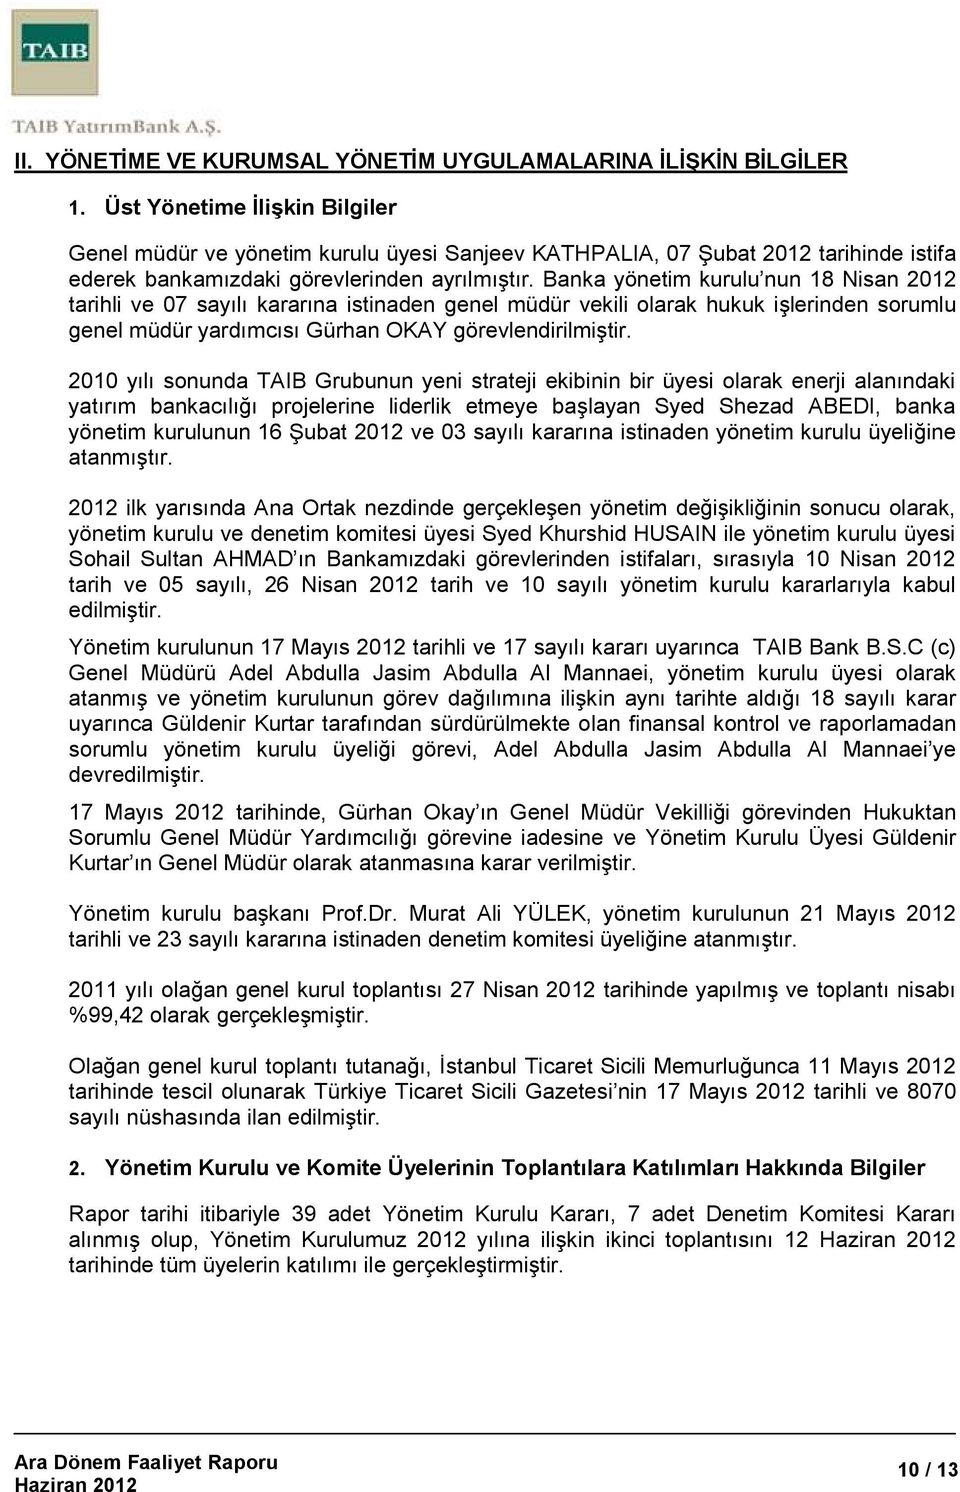 Banka yönetim kurulu nun 18 Nisan 2012 tarihli ve 07 sayılı kararına istinaden genel müdür vekili olarak hukuk işlerinden sorumlu genel müdür yardımcısı Gürhan OKAY görevlendirilmiştir.